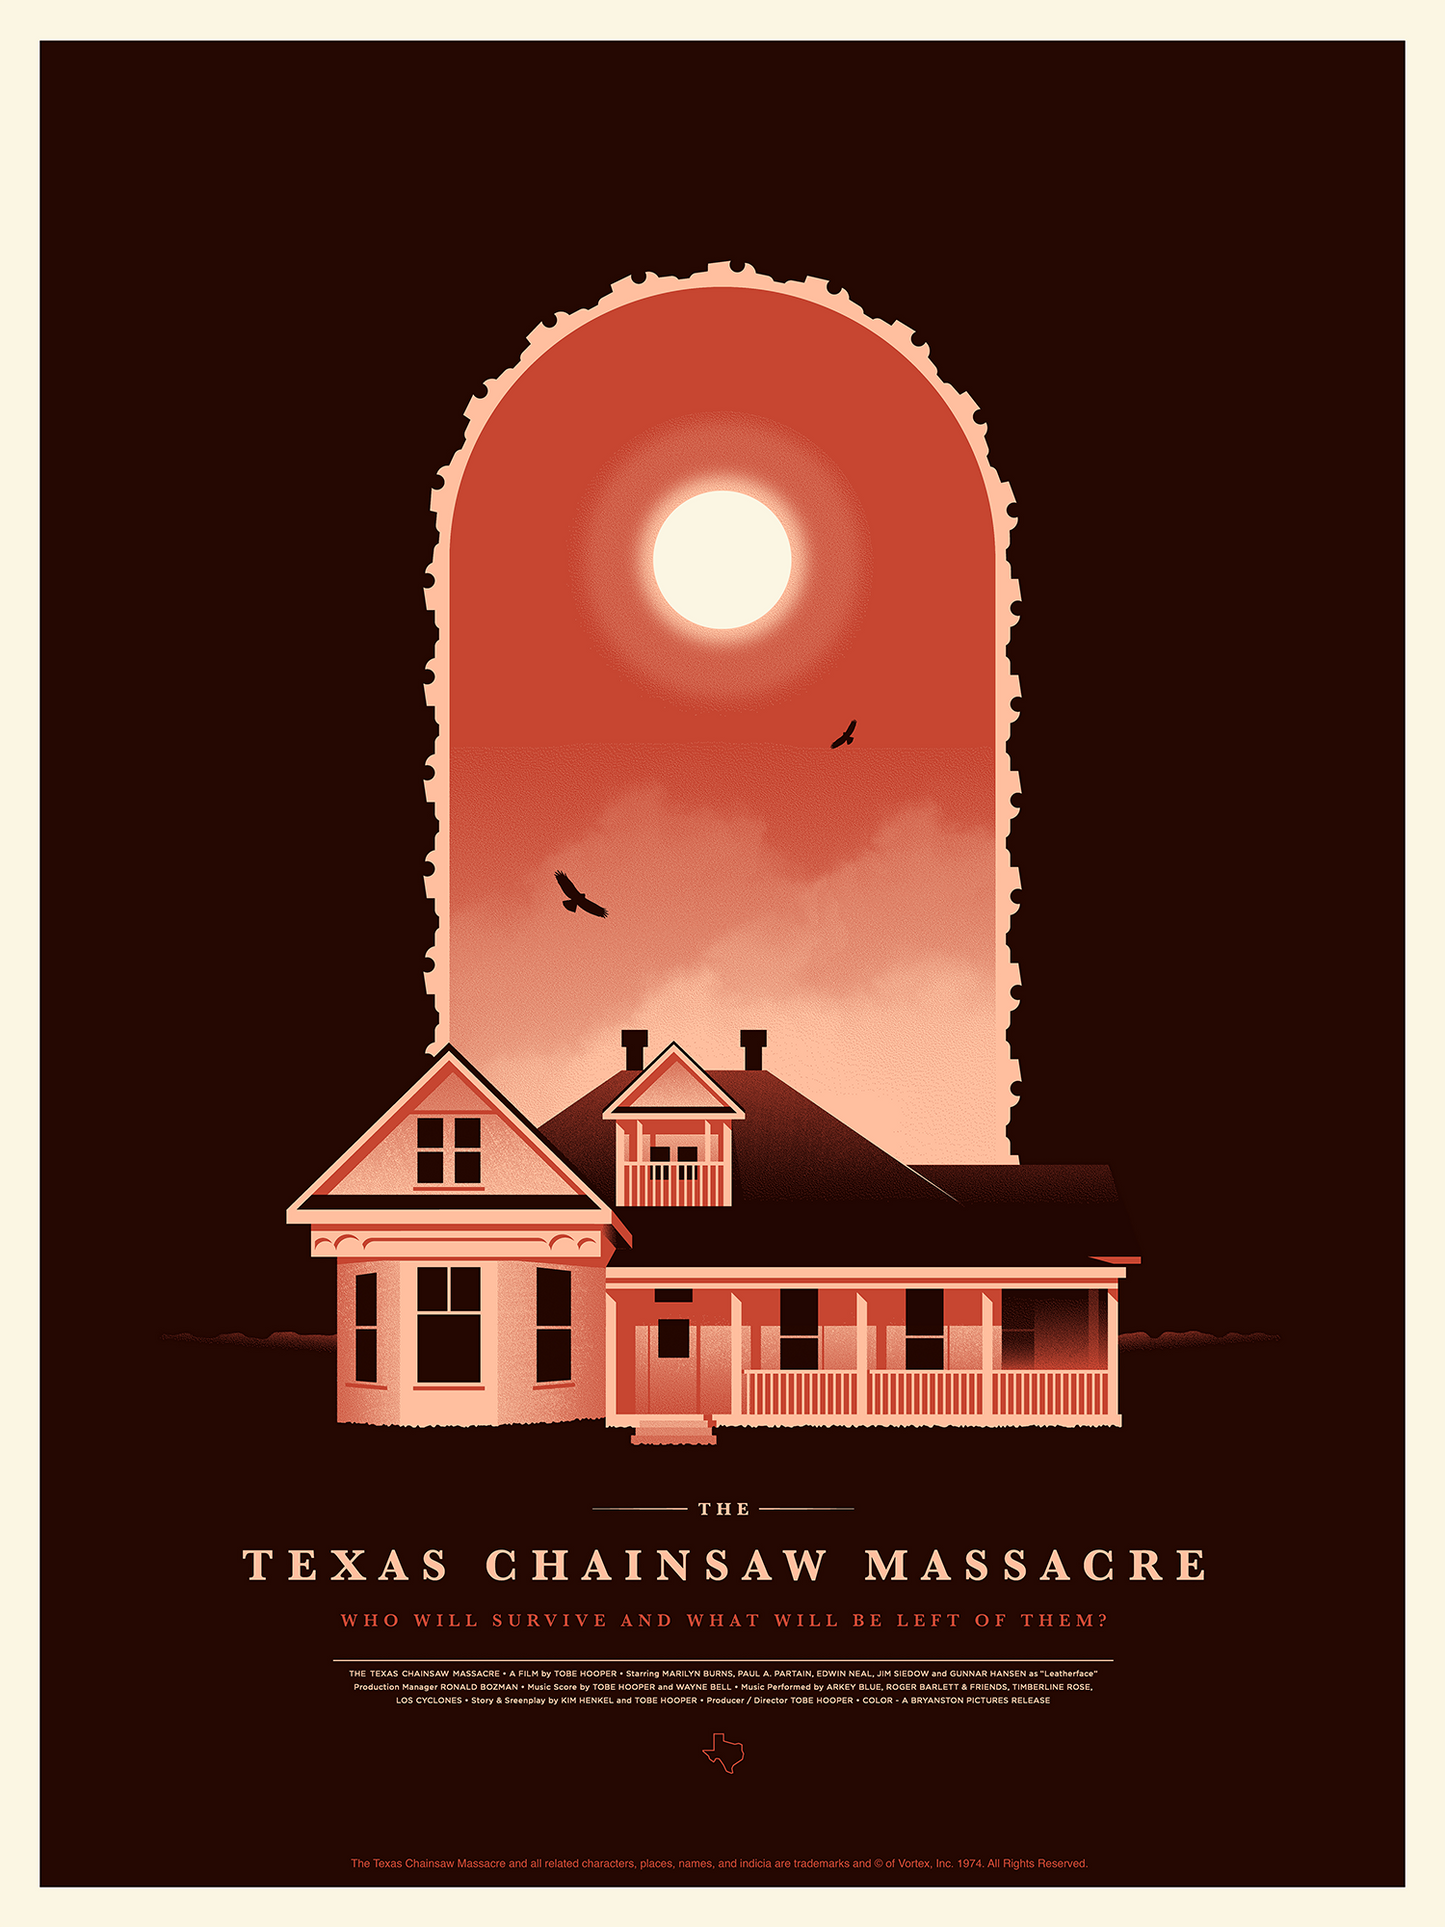 Simon Marchner "Texas Chainsaw Massacre"